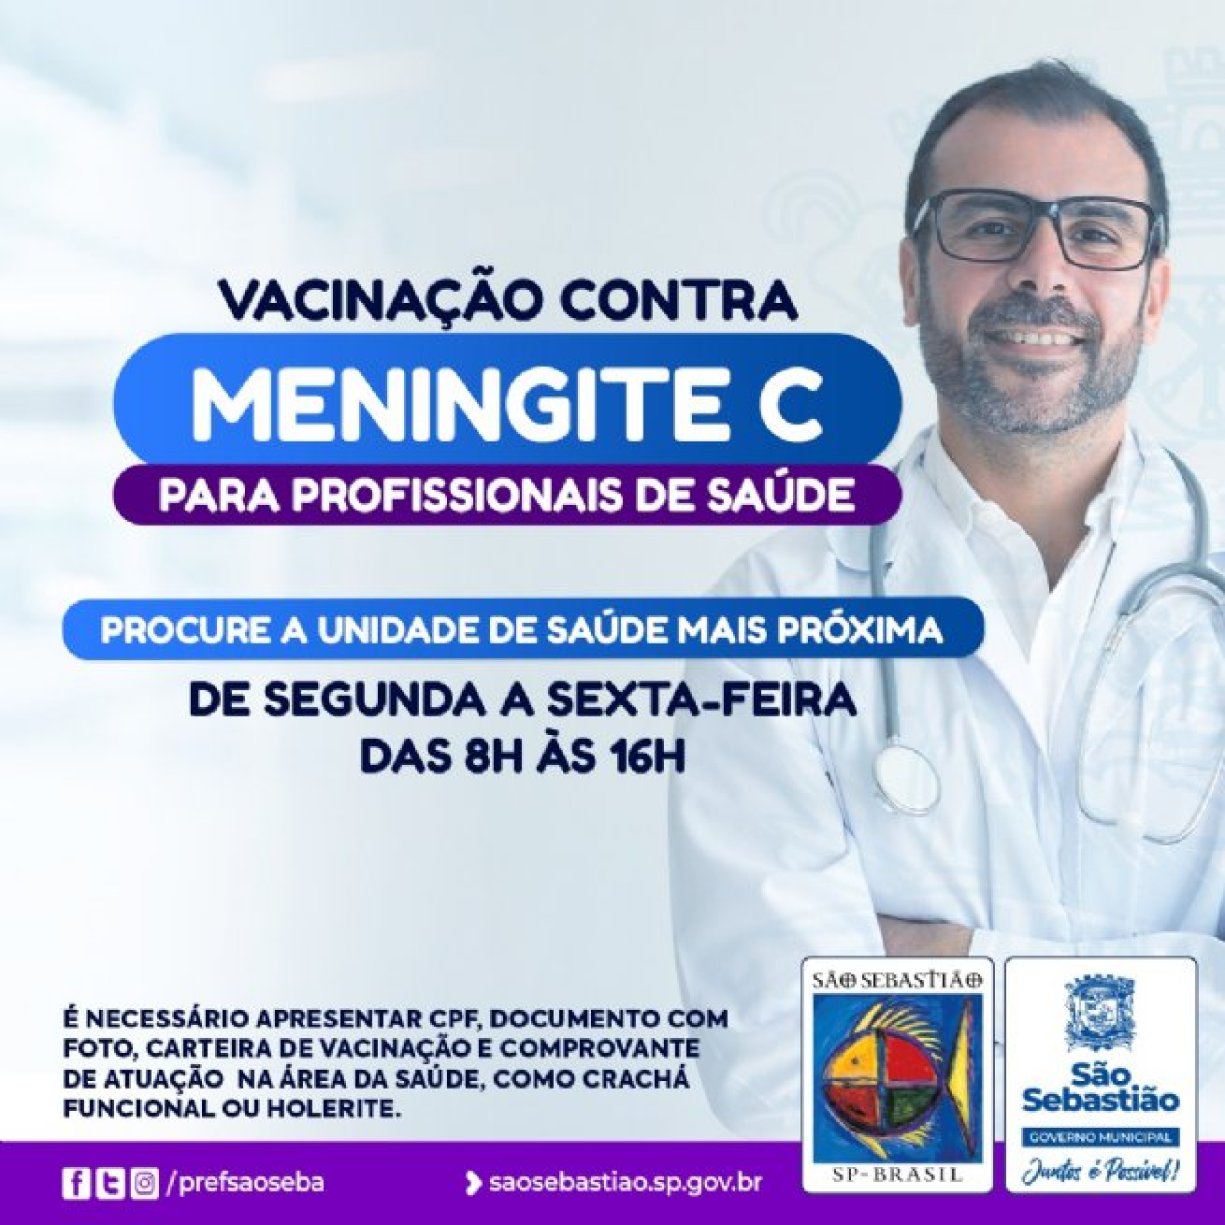 São Sebastião vacina profissionais da Saúde contra a Meningite C